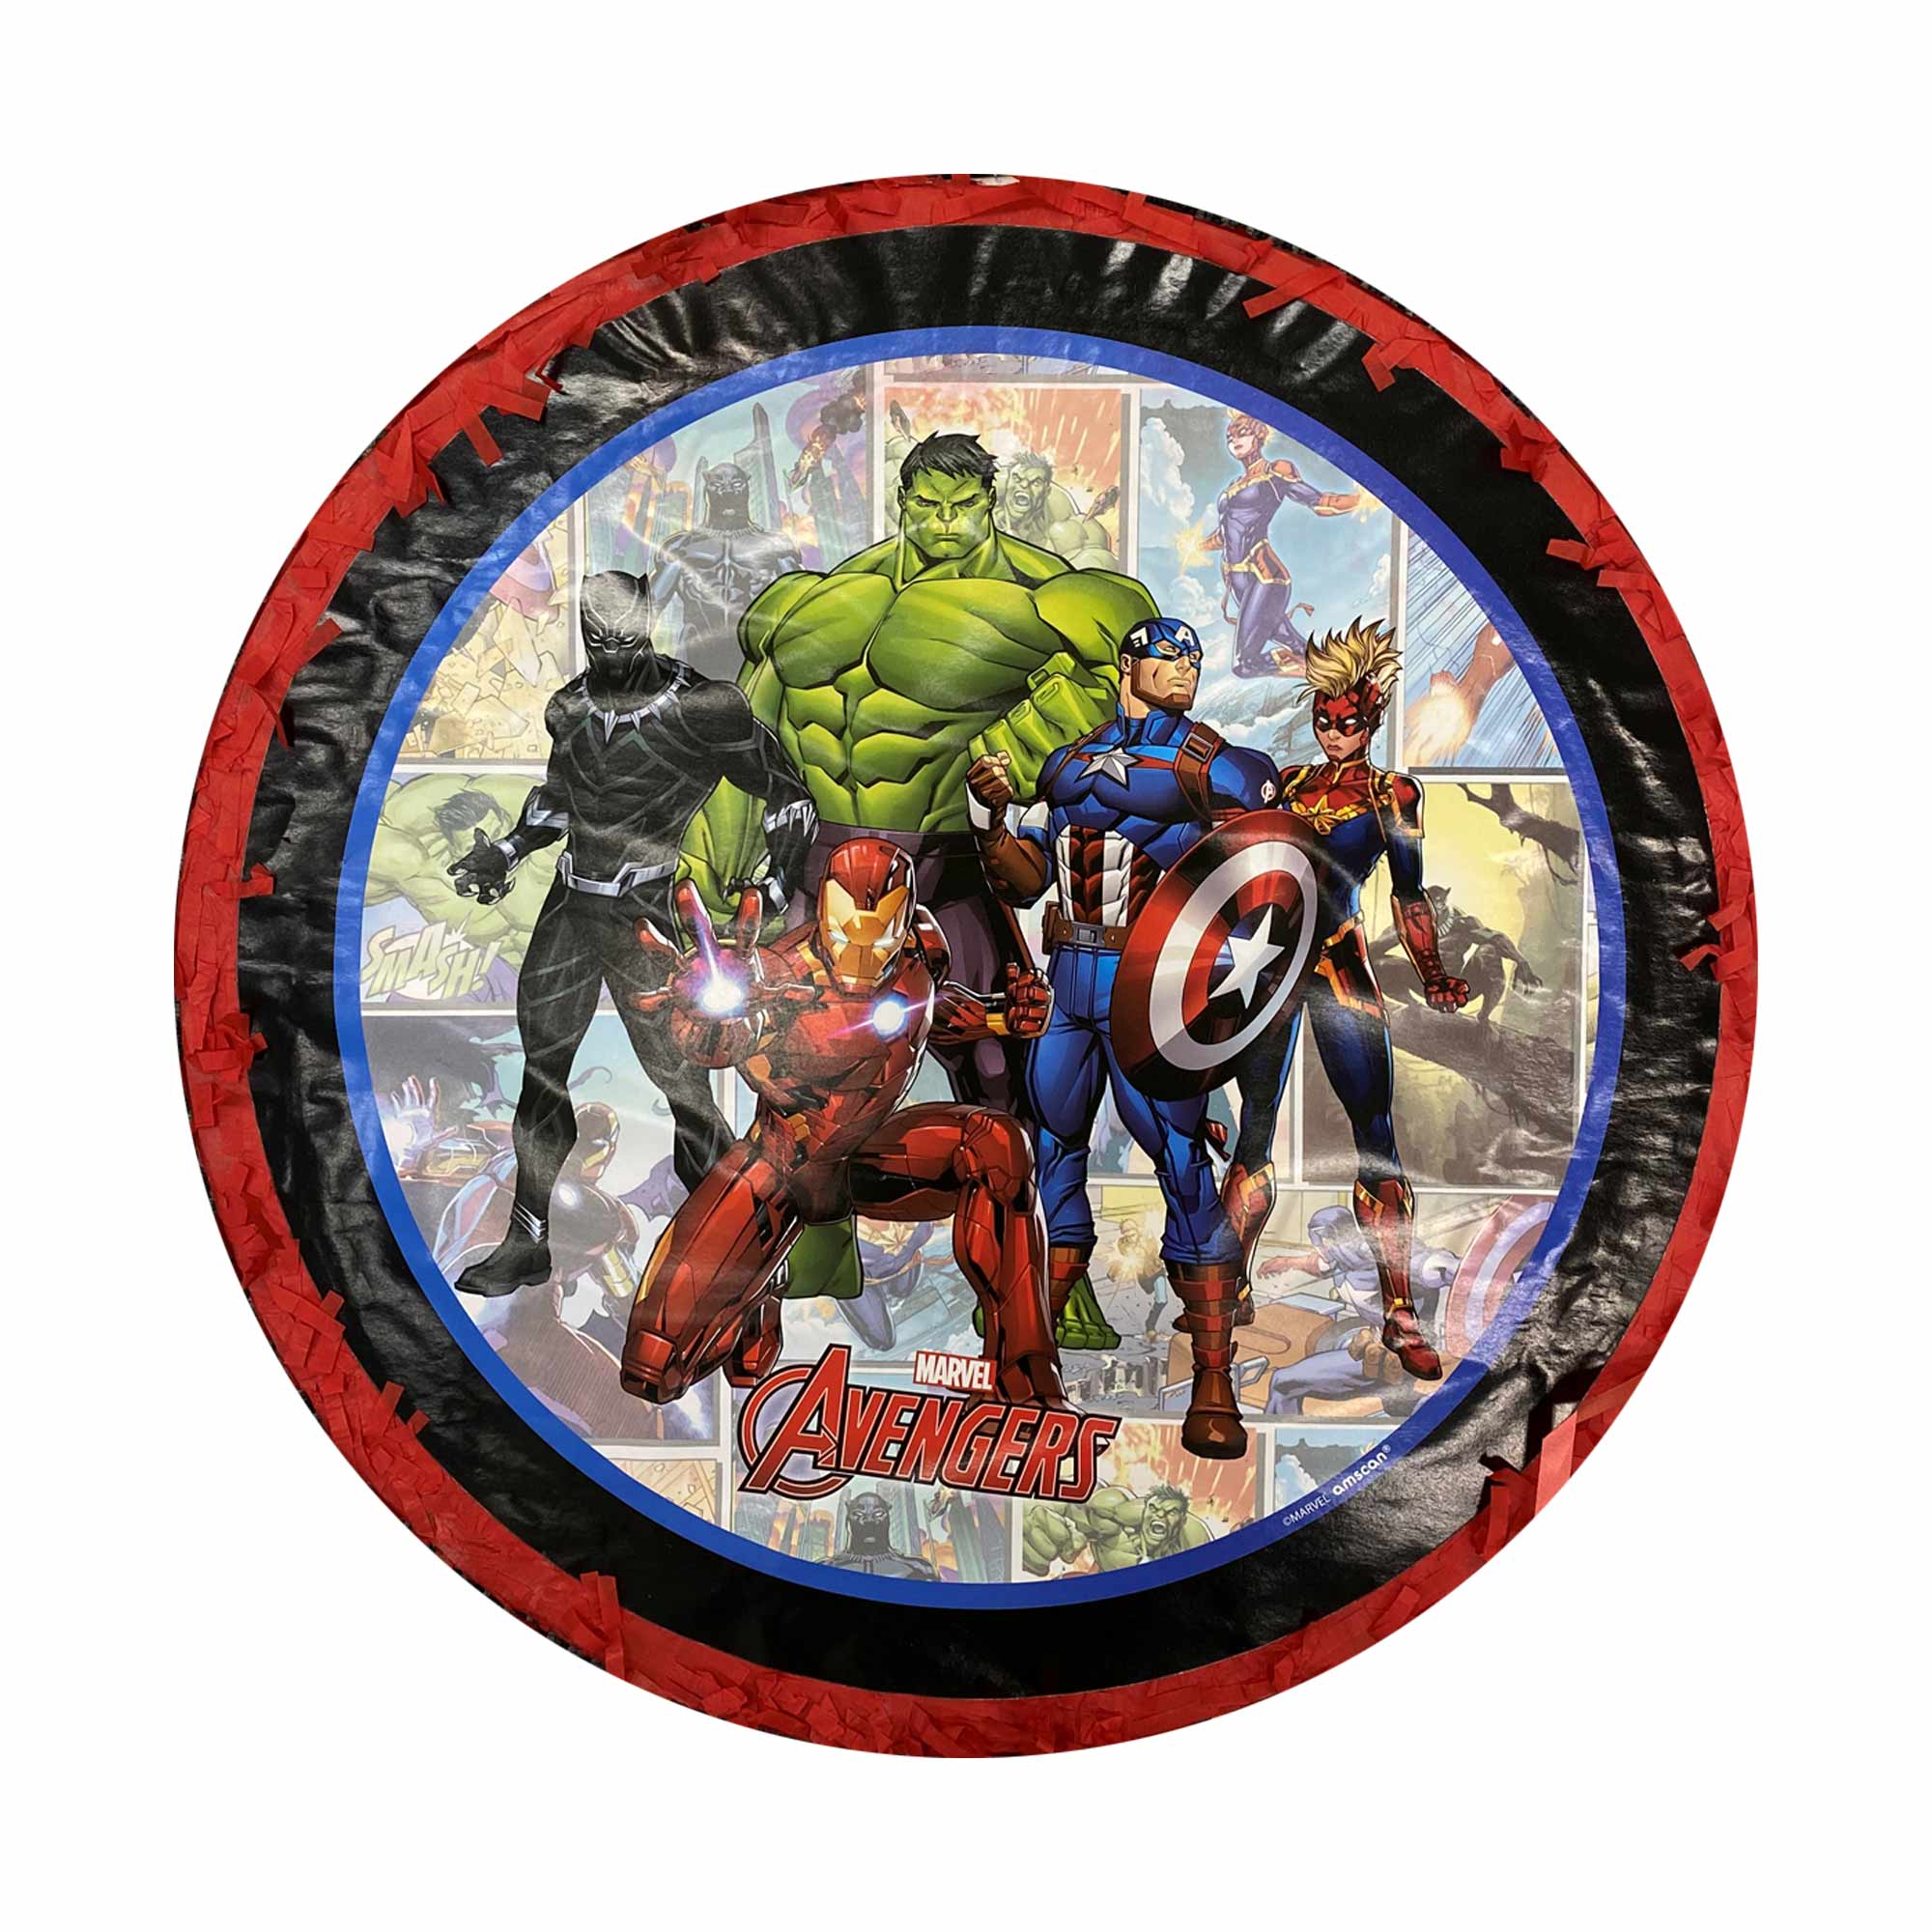 Marvel Avengers Powers Unite Expandable Pull String Drum Pinata - 35x35x9cm Default Title